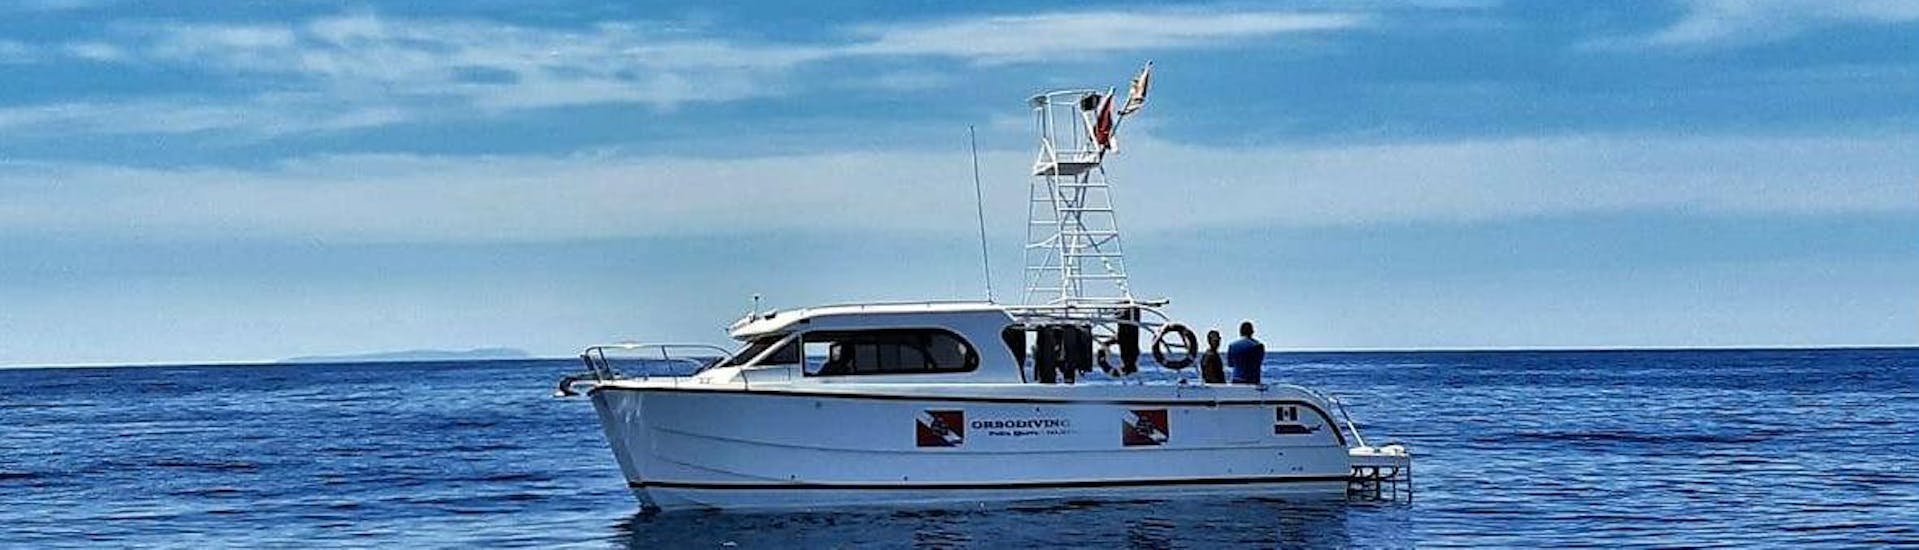 De boot tijdens de boottocht langs de Costa Smeralda met Snorkellen georganiseerd door Orso Diving Club Poltu Quatu.